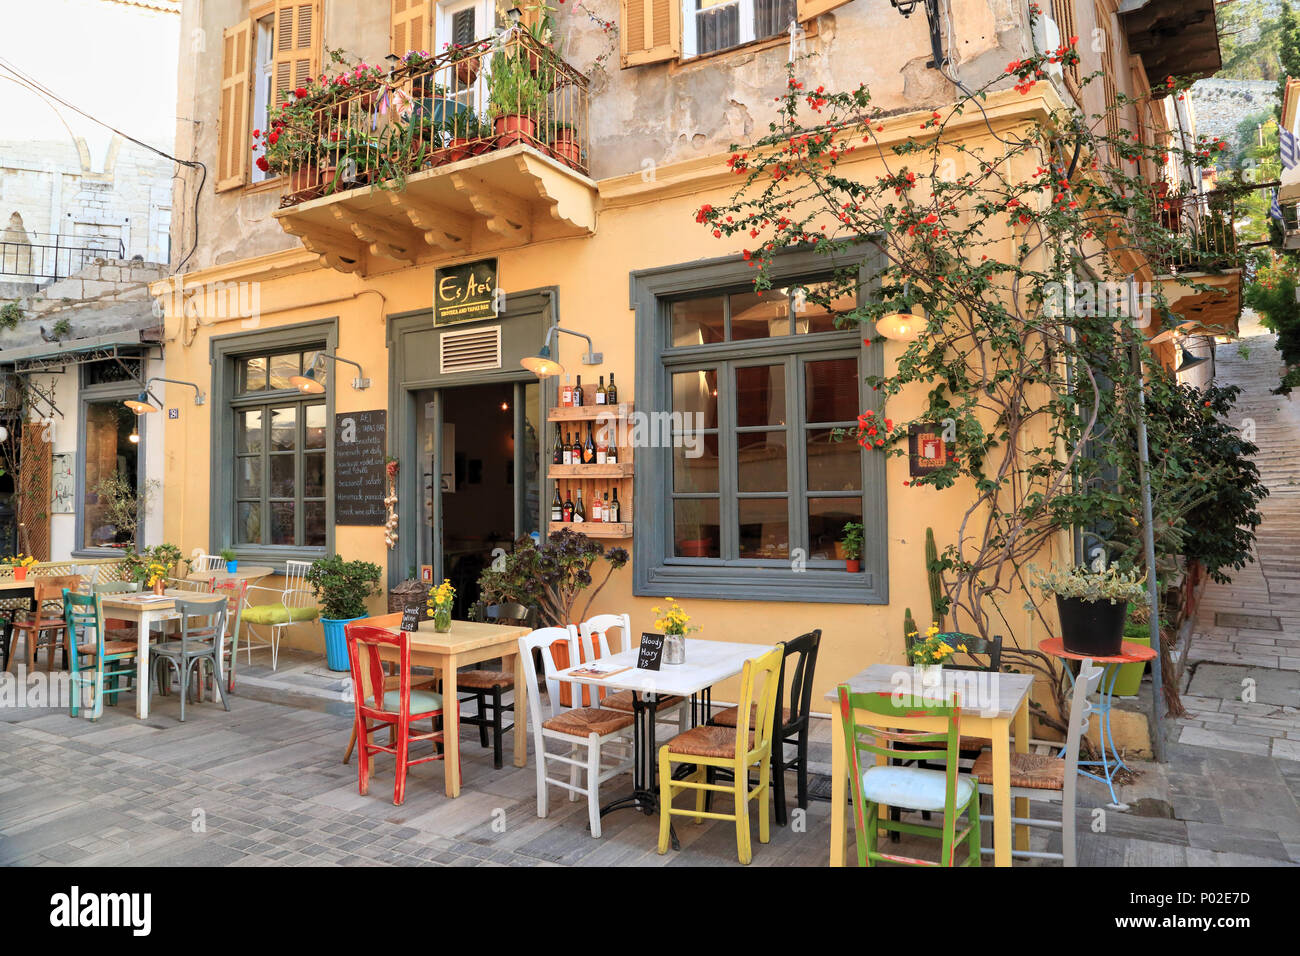 Bar café grec, 'es', de l'AEI et Enoteca Bar à tapas, un bar à vins colorés, Nauplie Grèce Banque D'Images